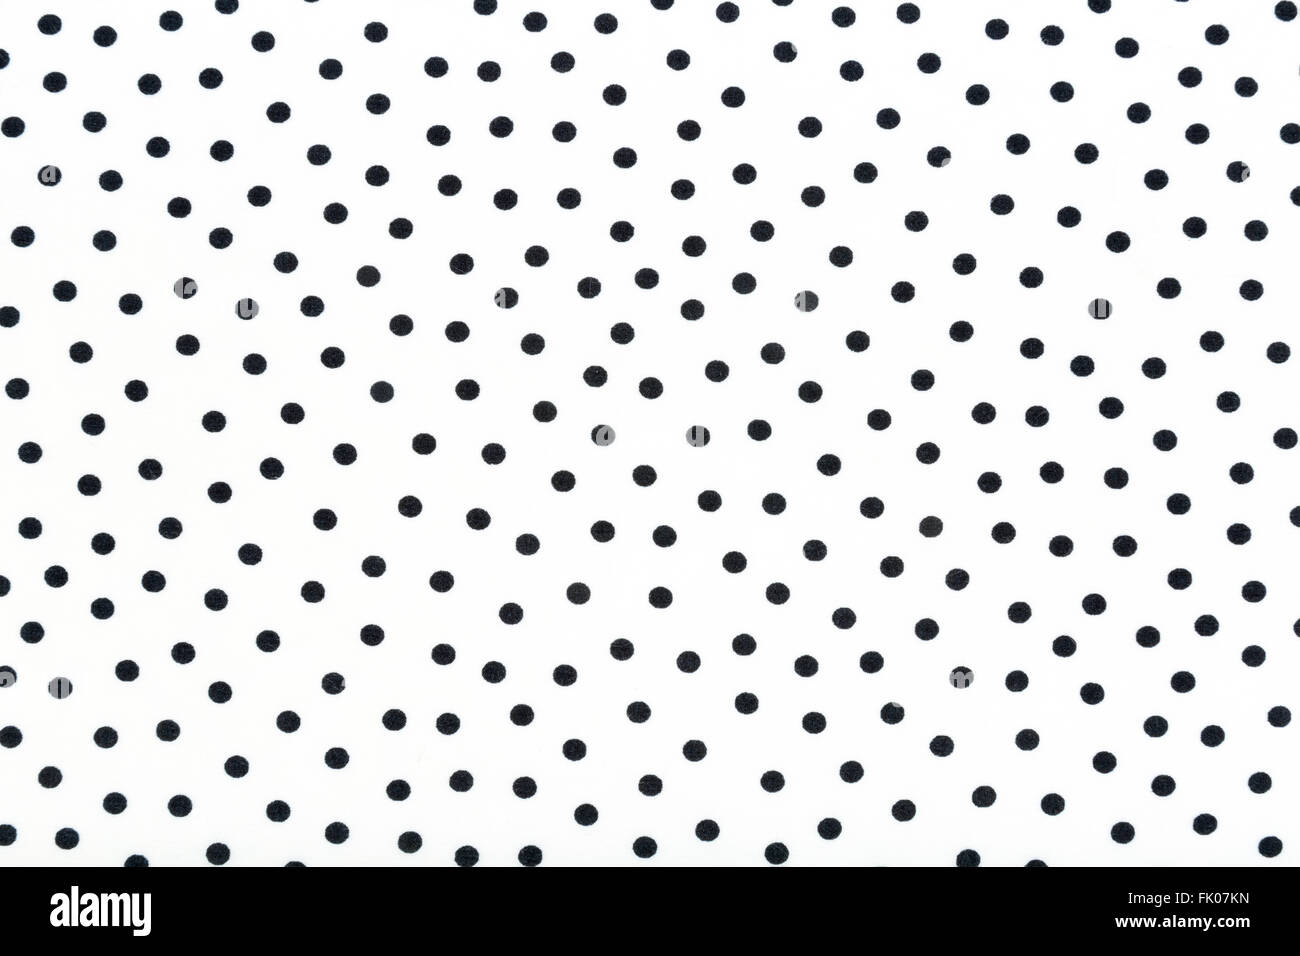 Un tissu blanc avec des points noirs en arrière-plan Banque D'Images